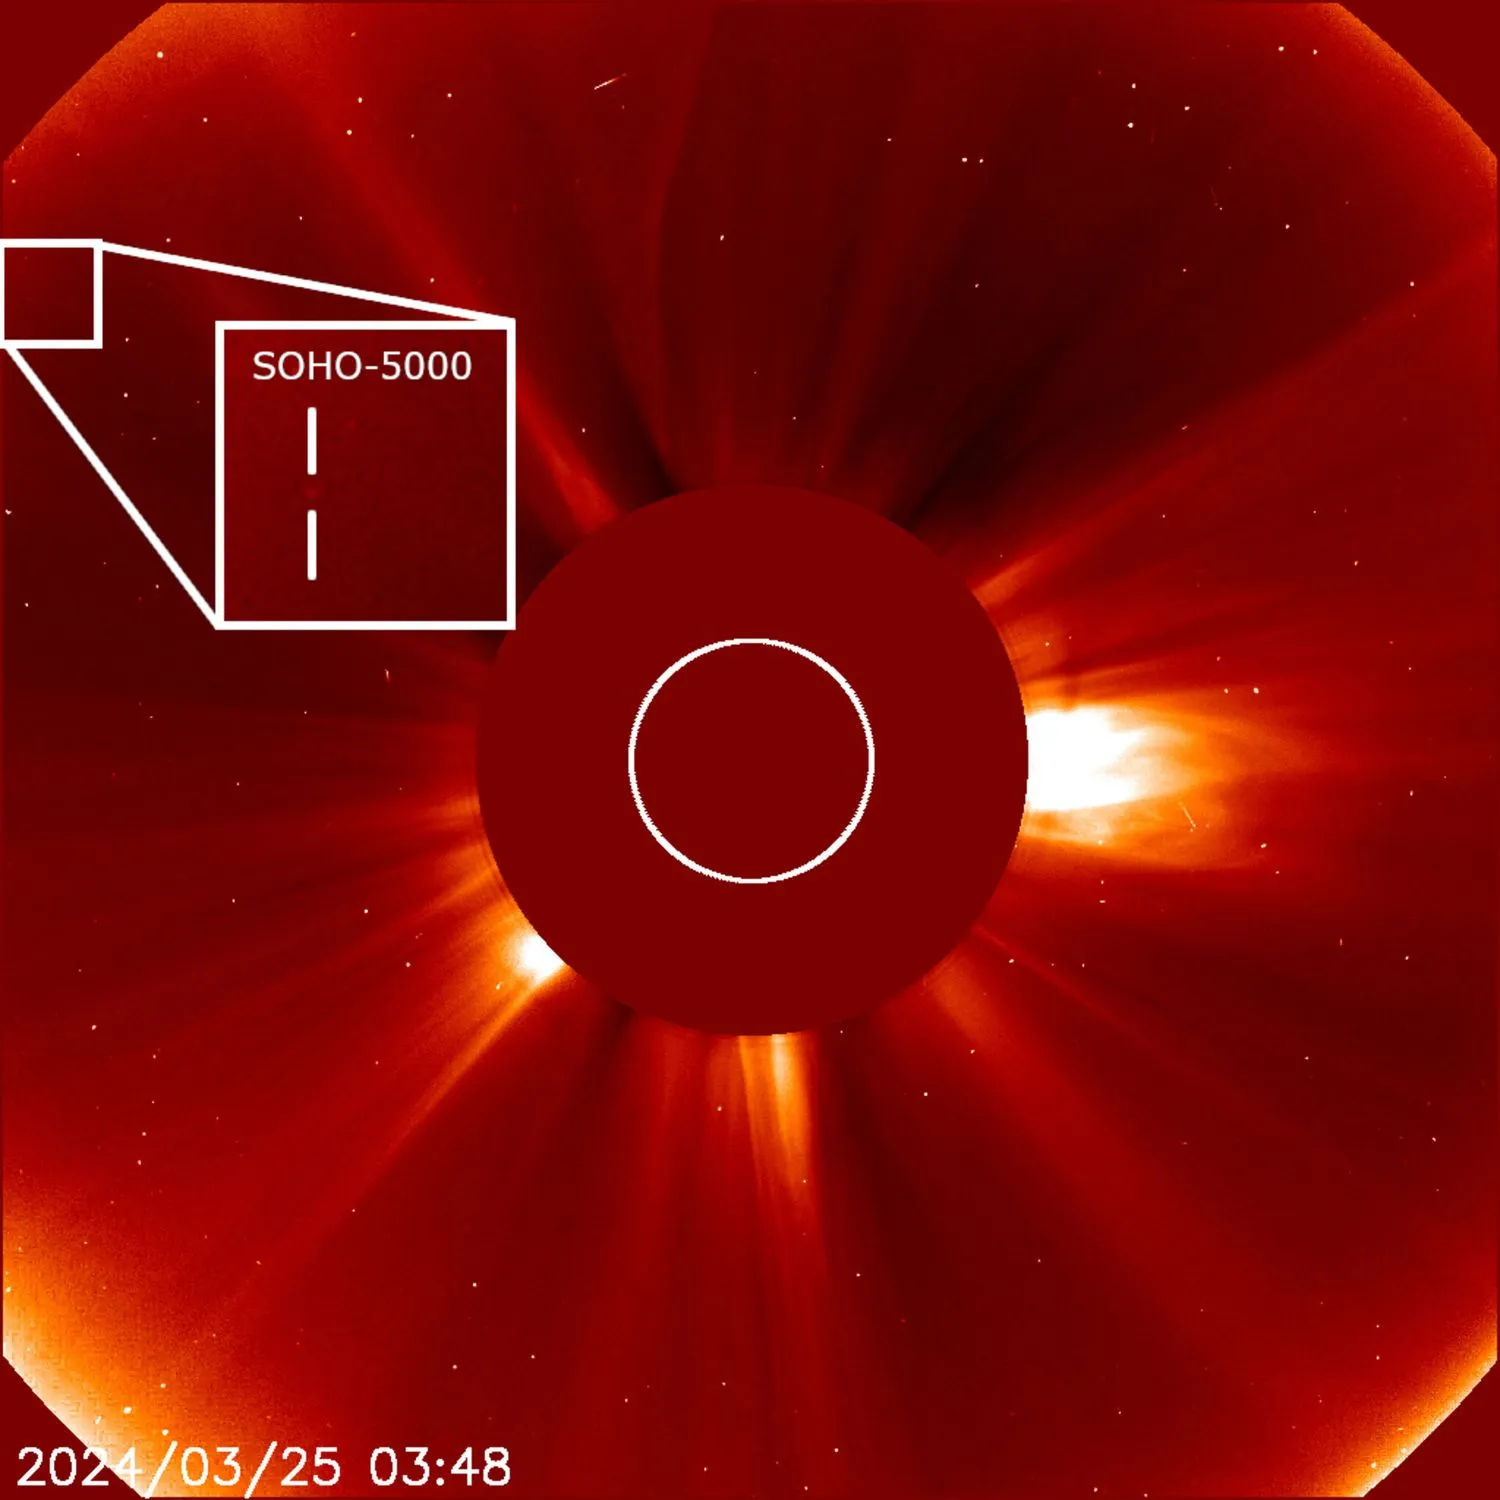 Mehr über den Artikel erfahren Sonnensatellit SOHO entdeckt seinen 5.000sten Kometen